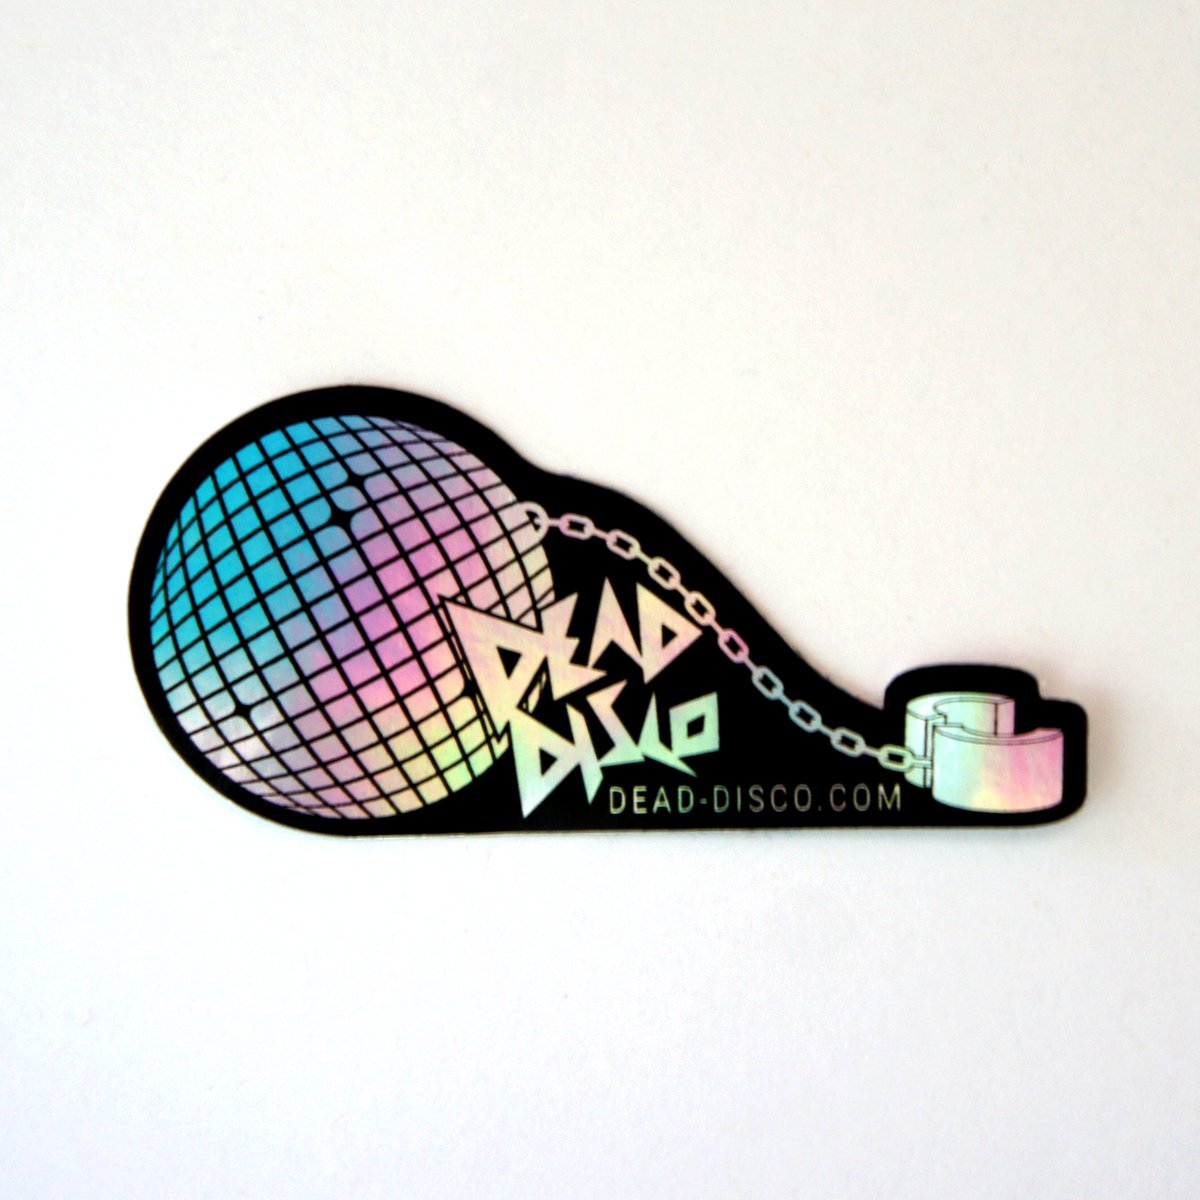 Slave to Dead Disco Holographic Sticker